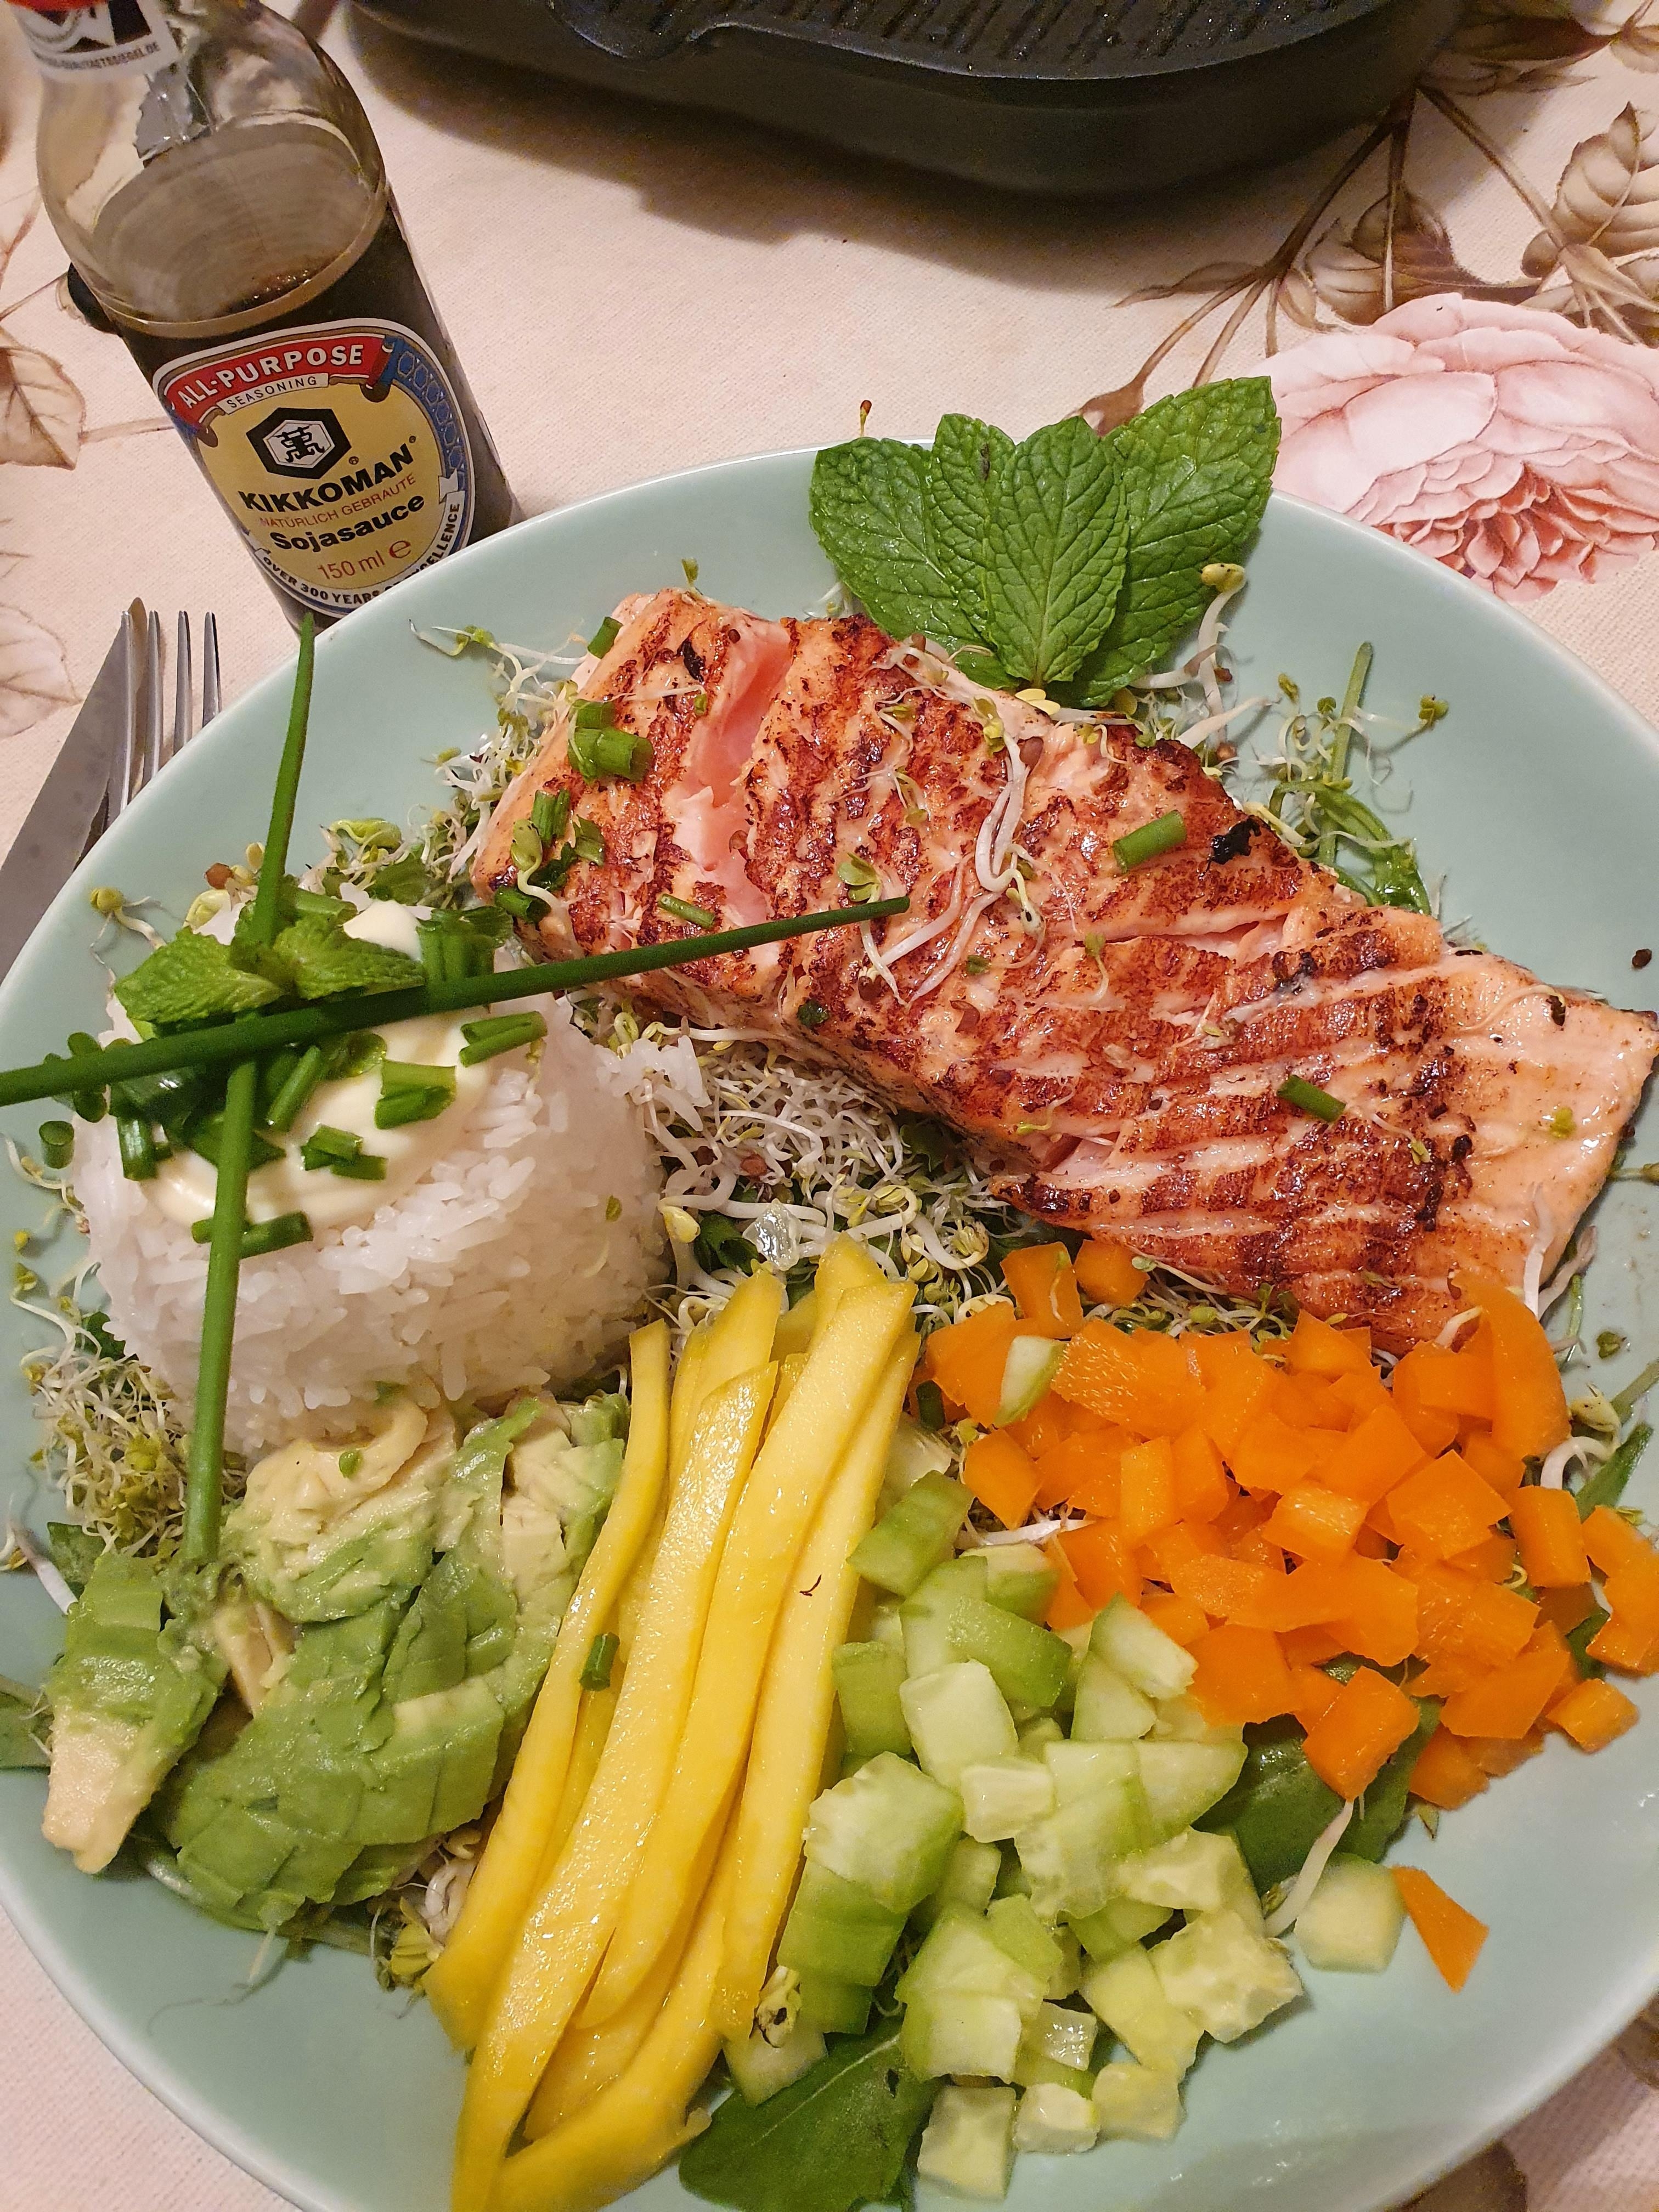 Eine köstliche Lachs/Sushi Bowl. 🤤
#FOODCHALLENGE #FOODIE